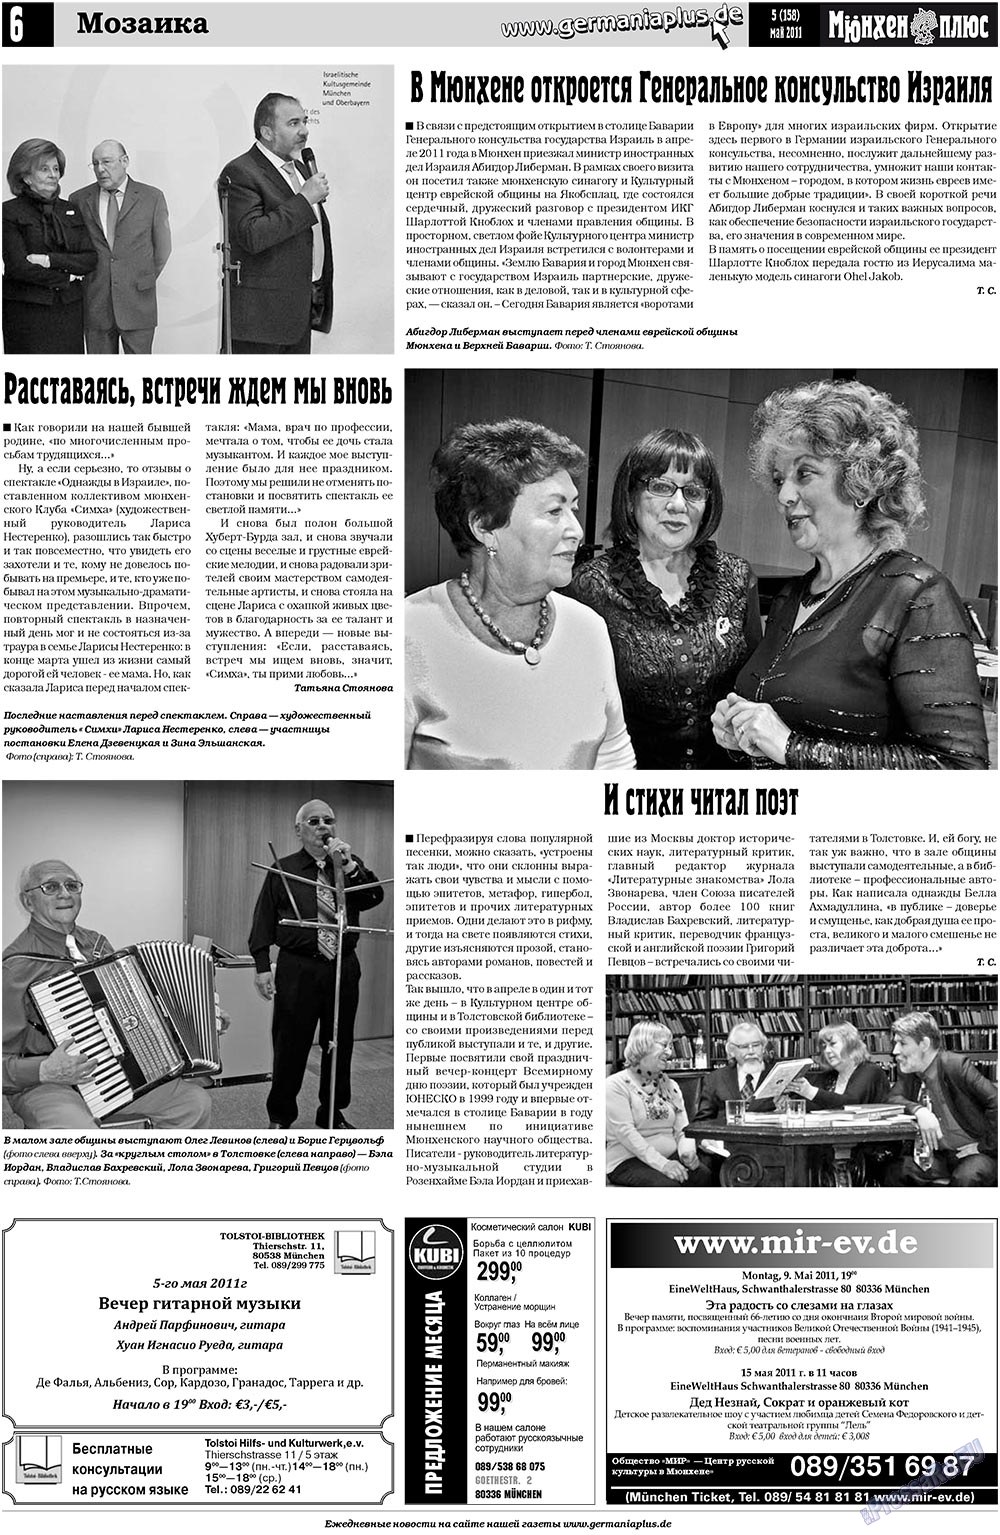 Германия плюс, газета. 2011 №5 стр.24